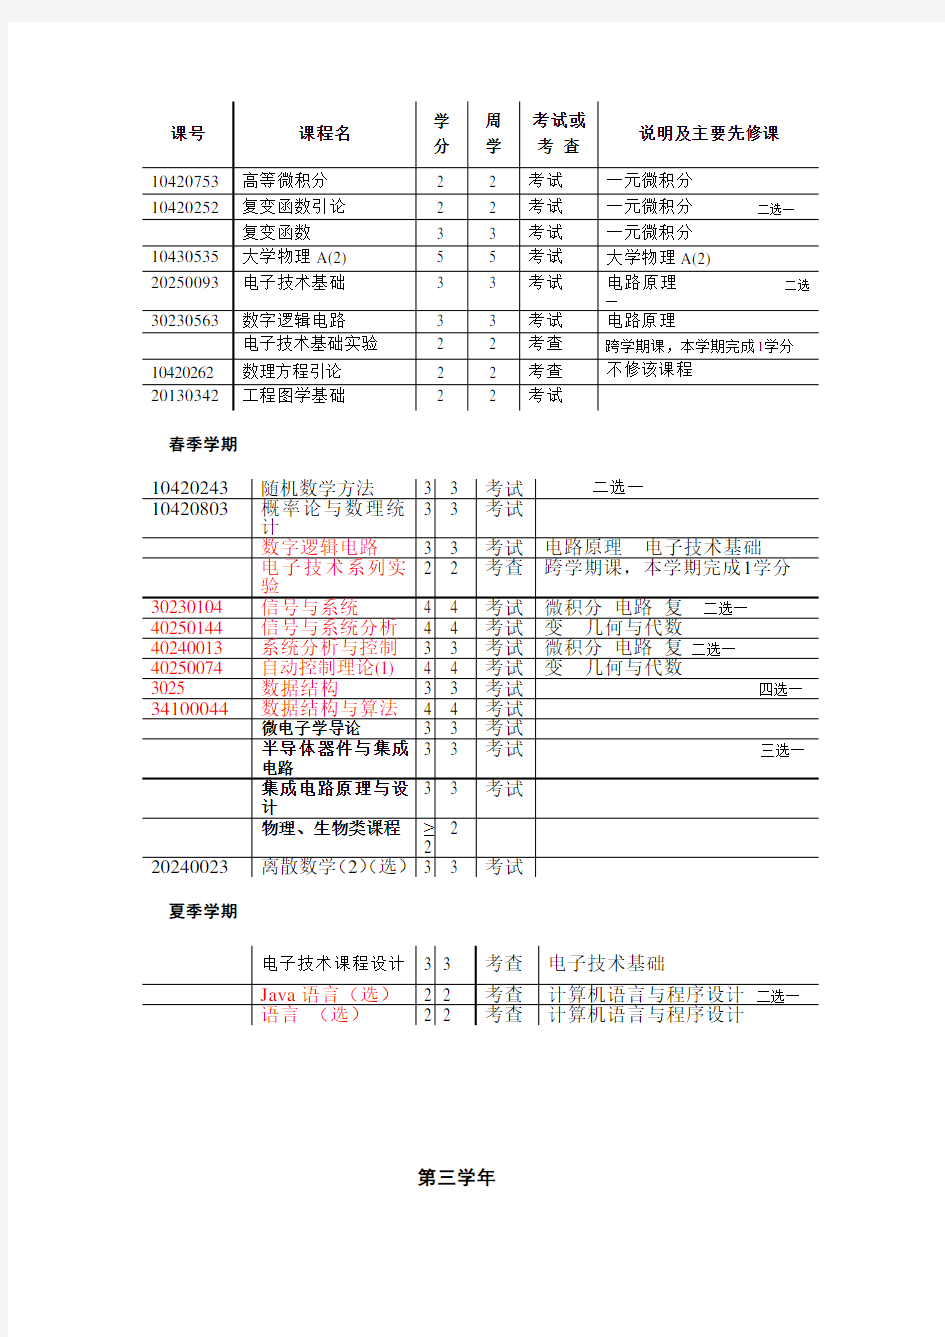 清华大学计算机科学与技术专业课程表